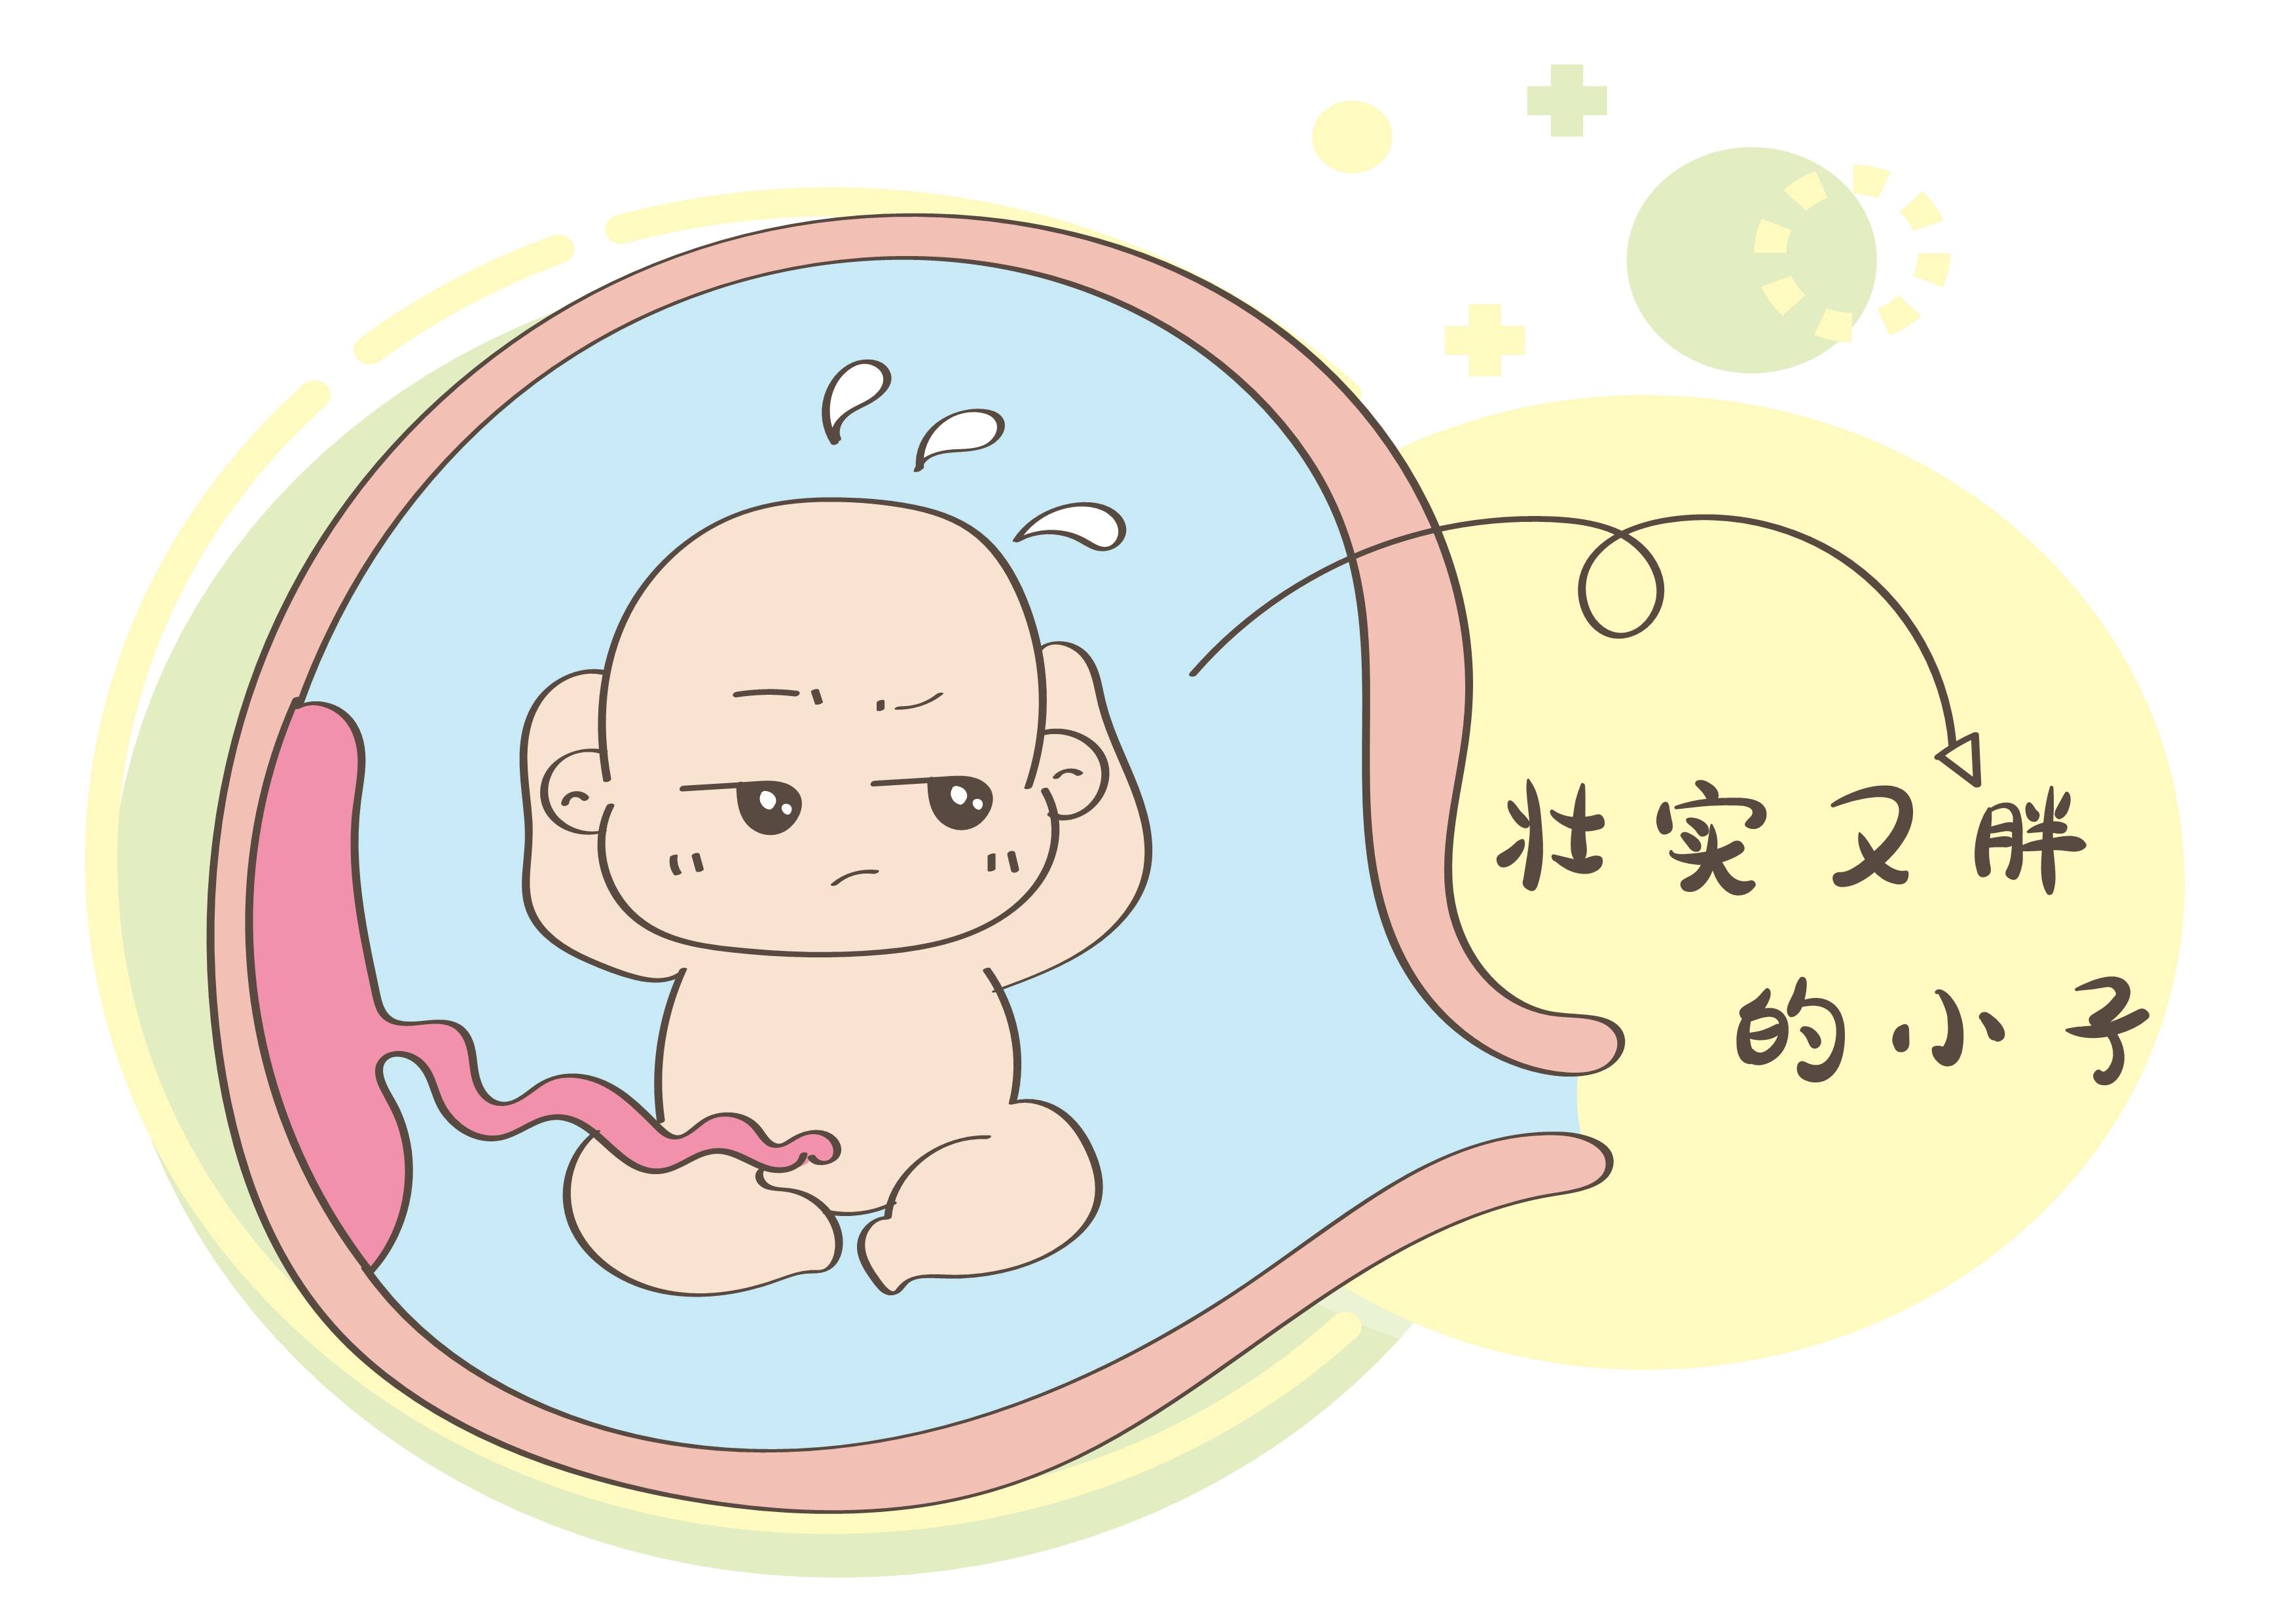 胎儿大小和什么有关?孕妇体重关系不大,主要看以下几个指标